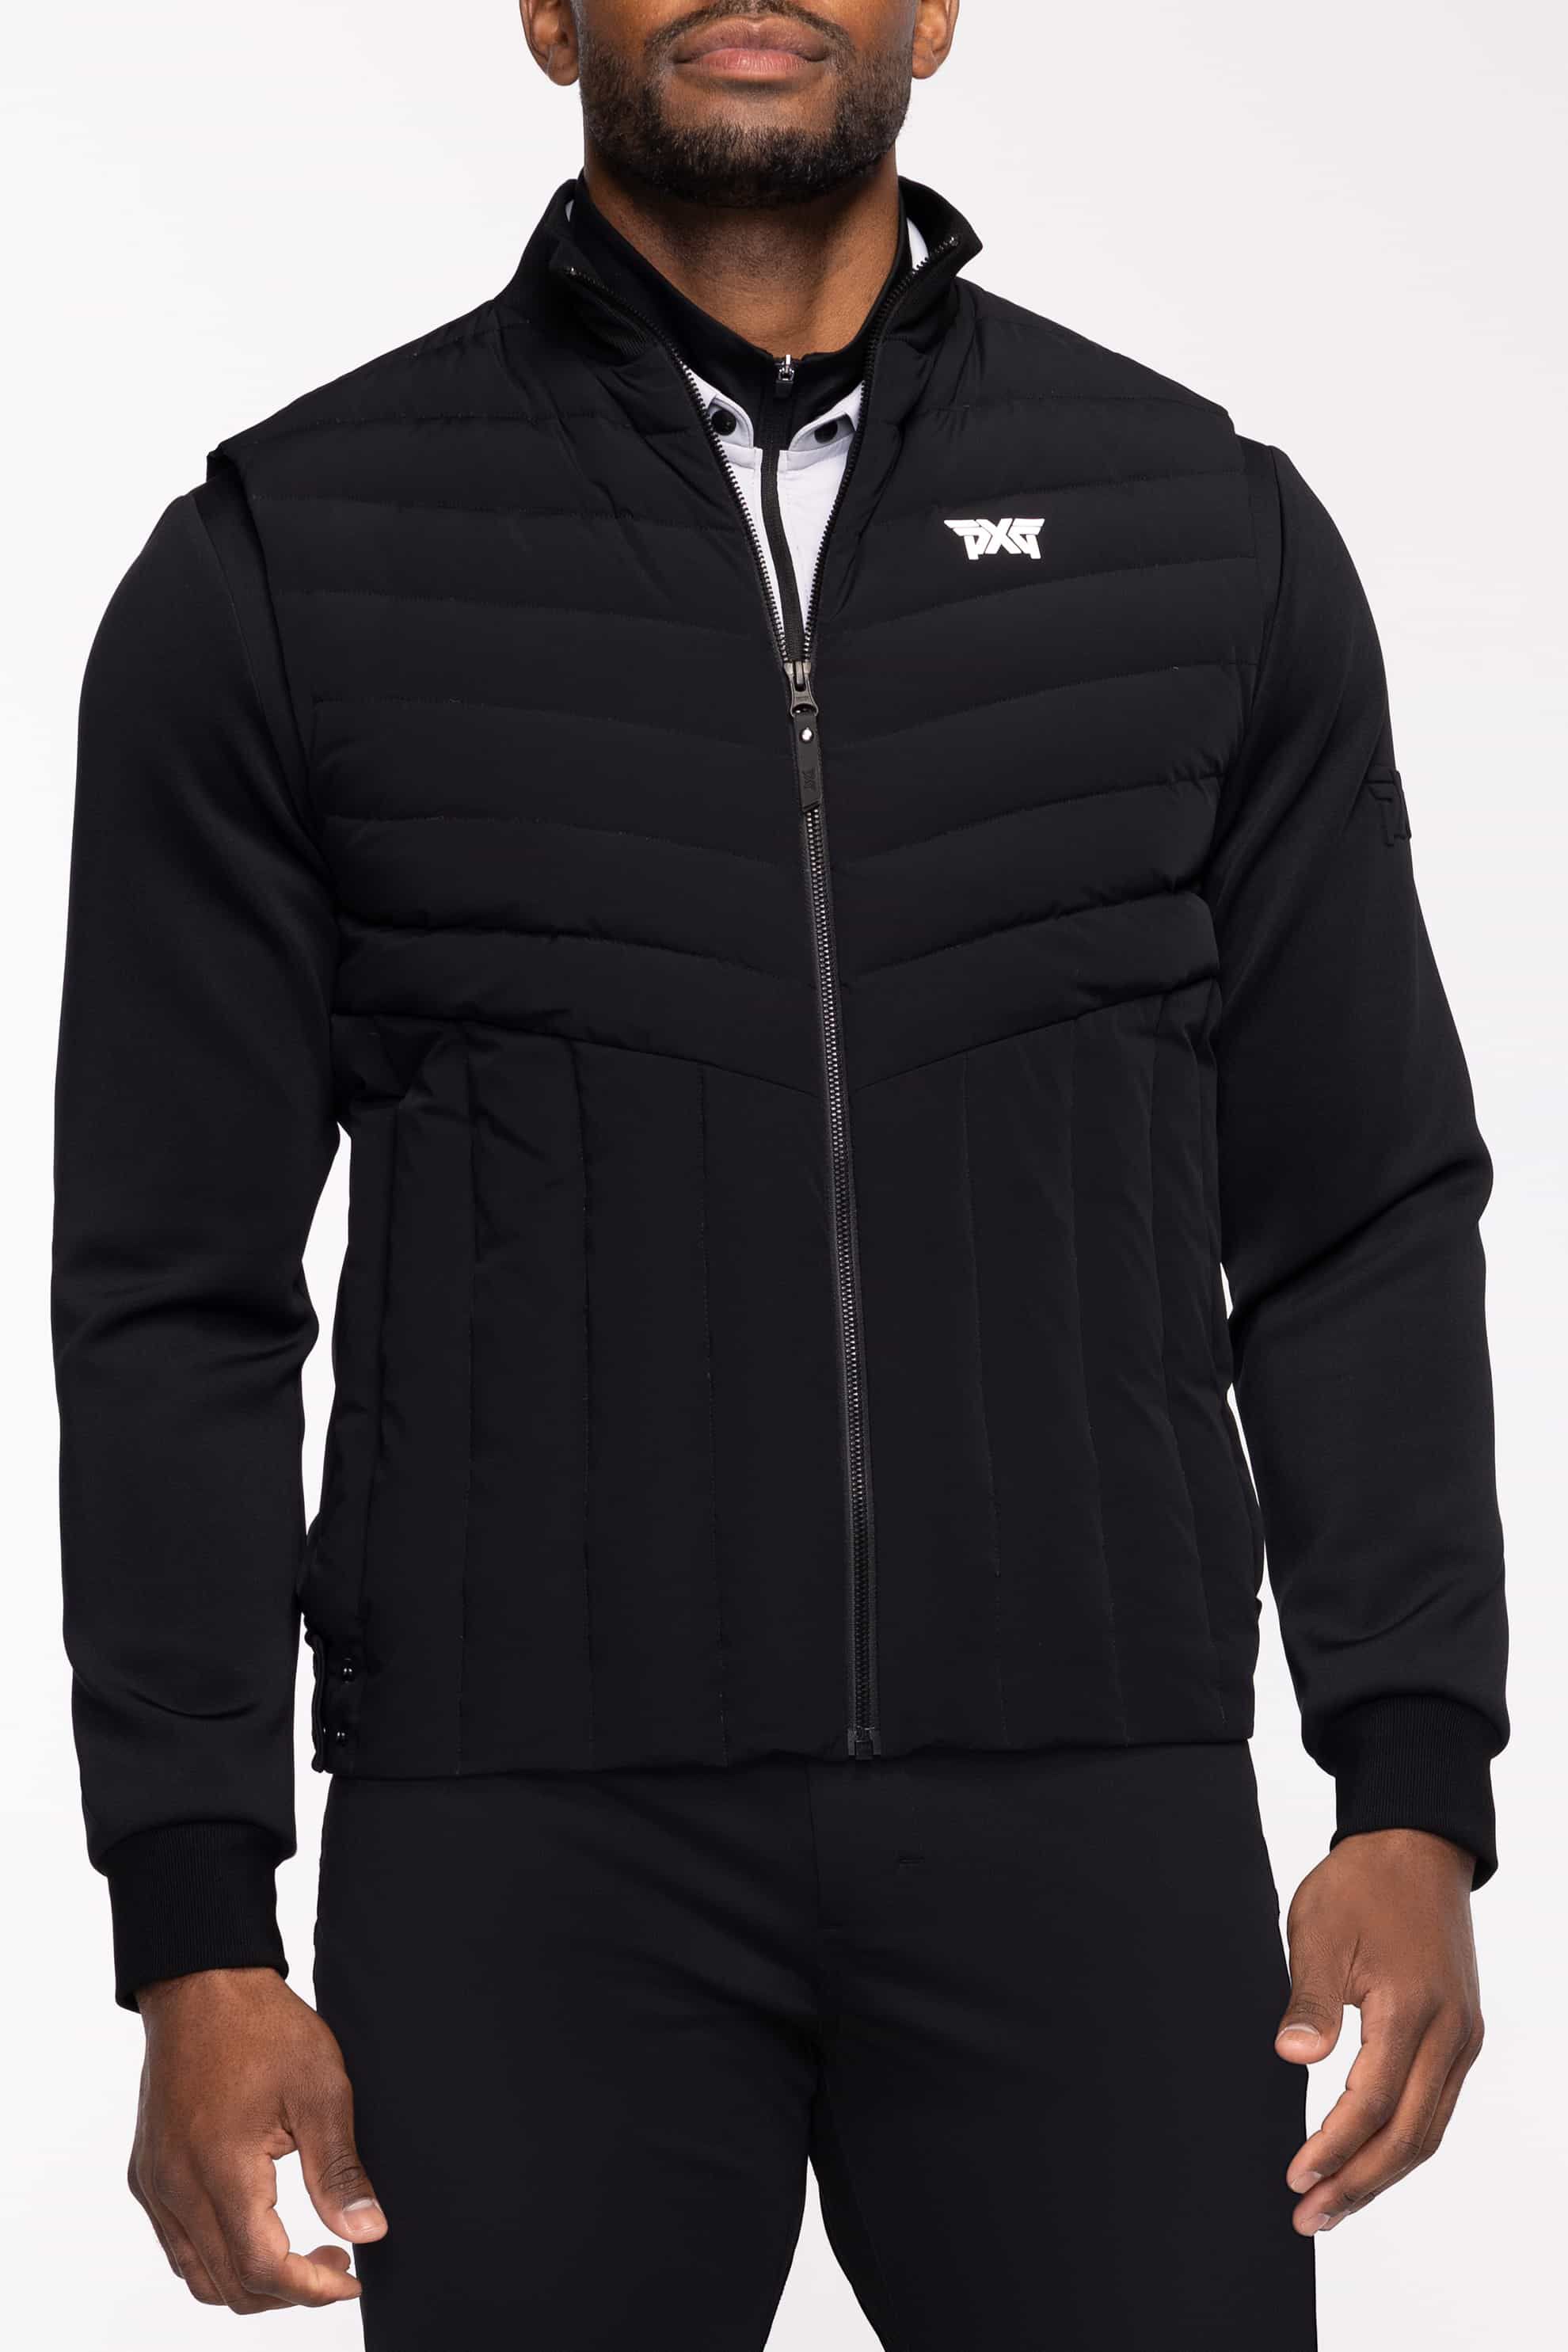 Shop Men's Golf アウター - Vests, Jackets and Coats | PXG JP